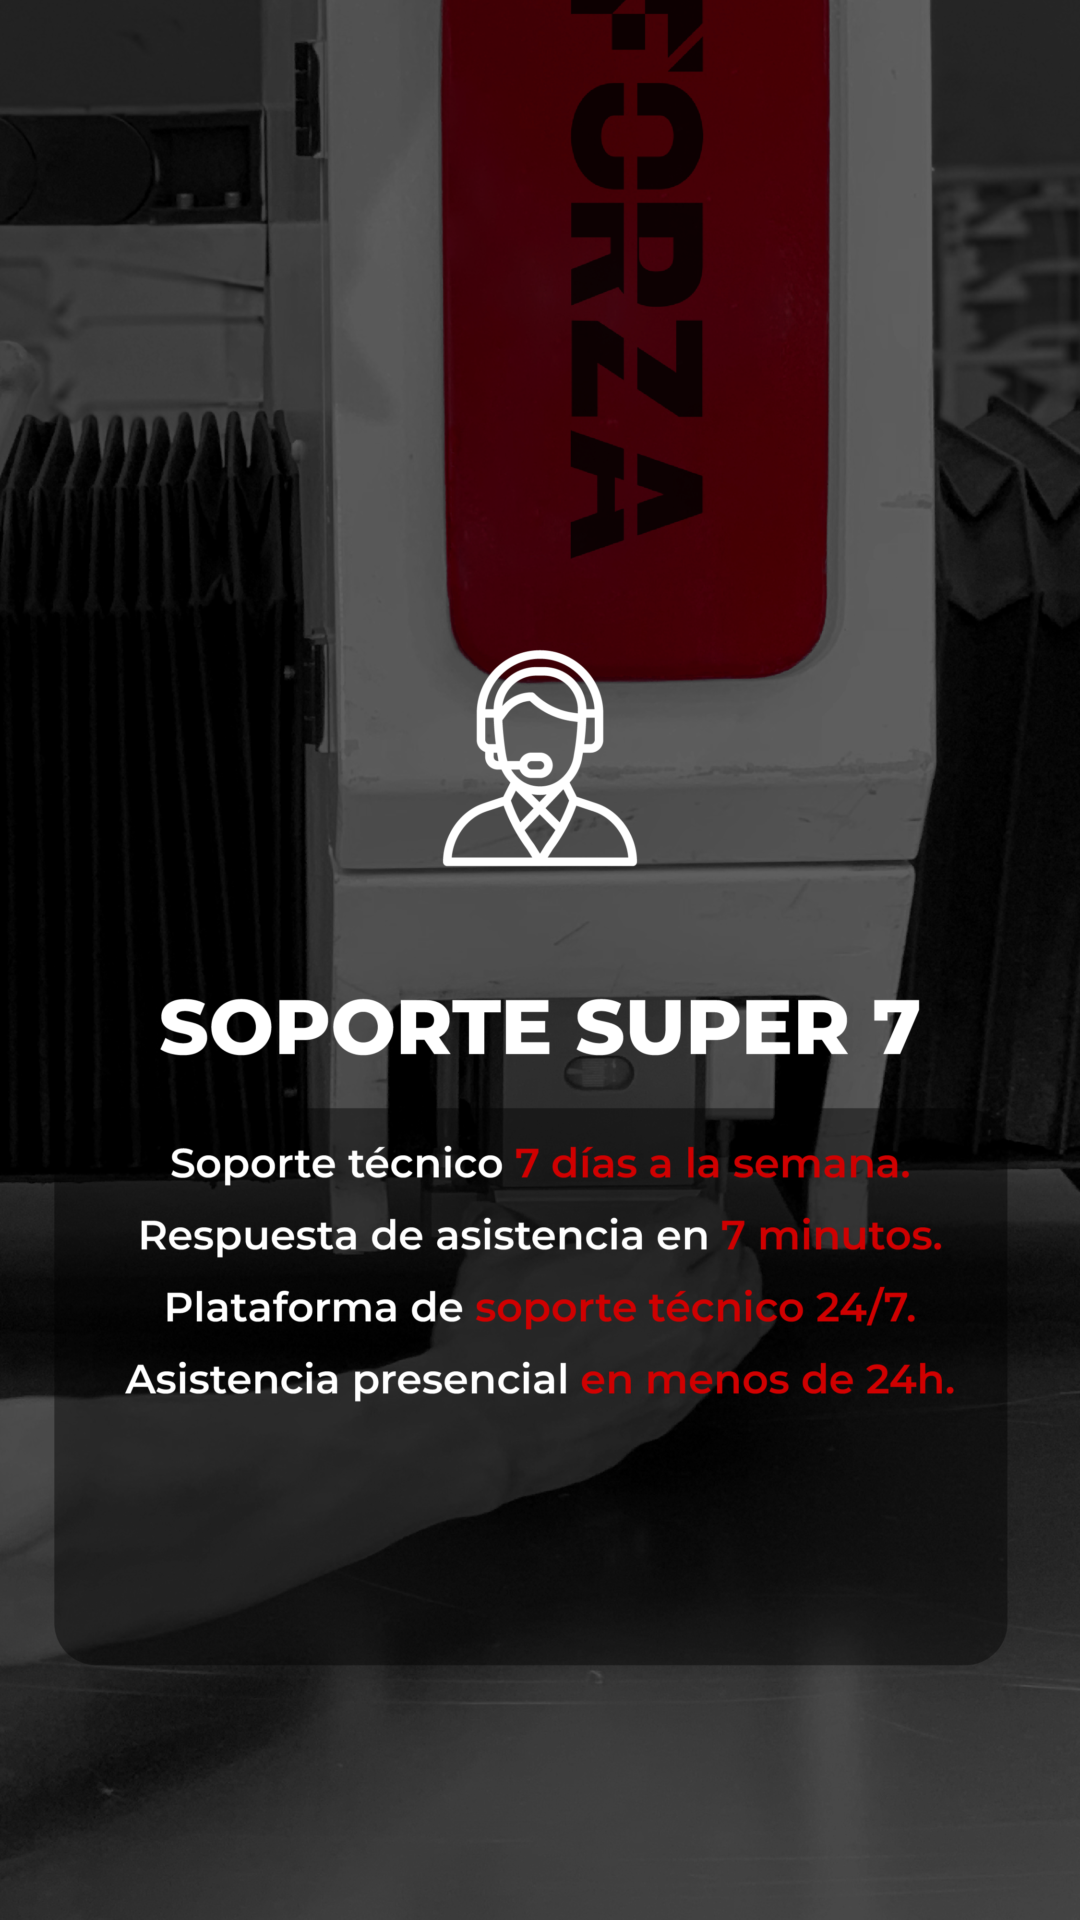 Soporte Súper 7: soporte técnico todos los días, plataforma de soporte 24/7 y asistencia presencial en menos de 24h